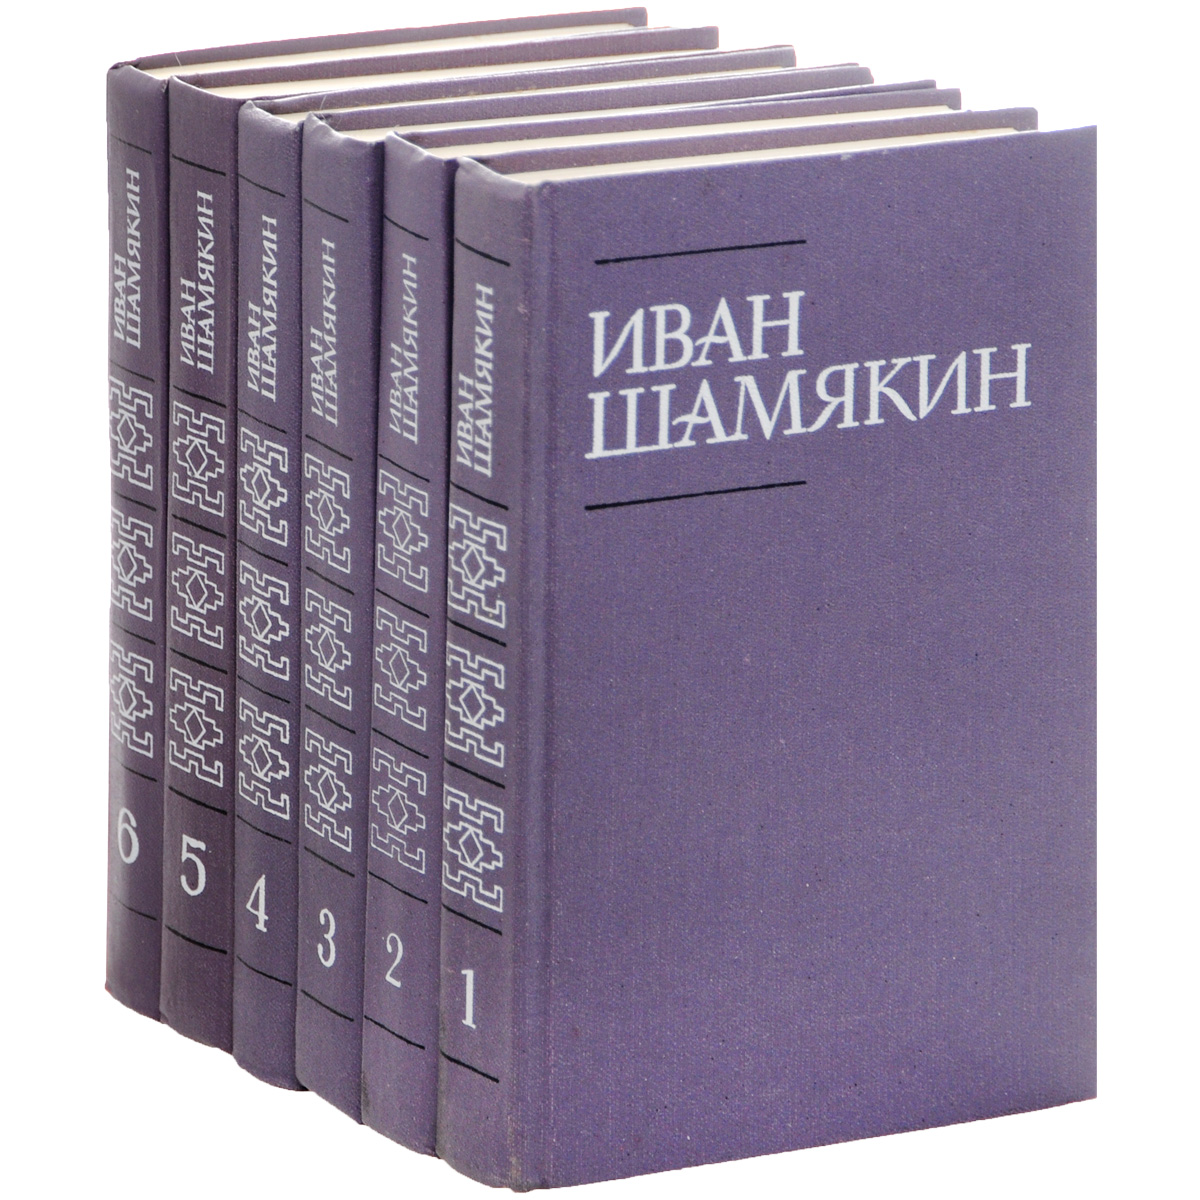 Иван Шамякин. Собрание сочинений в 6 томах (комплект из 6 книг)